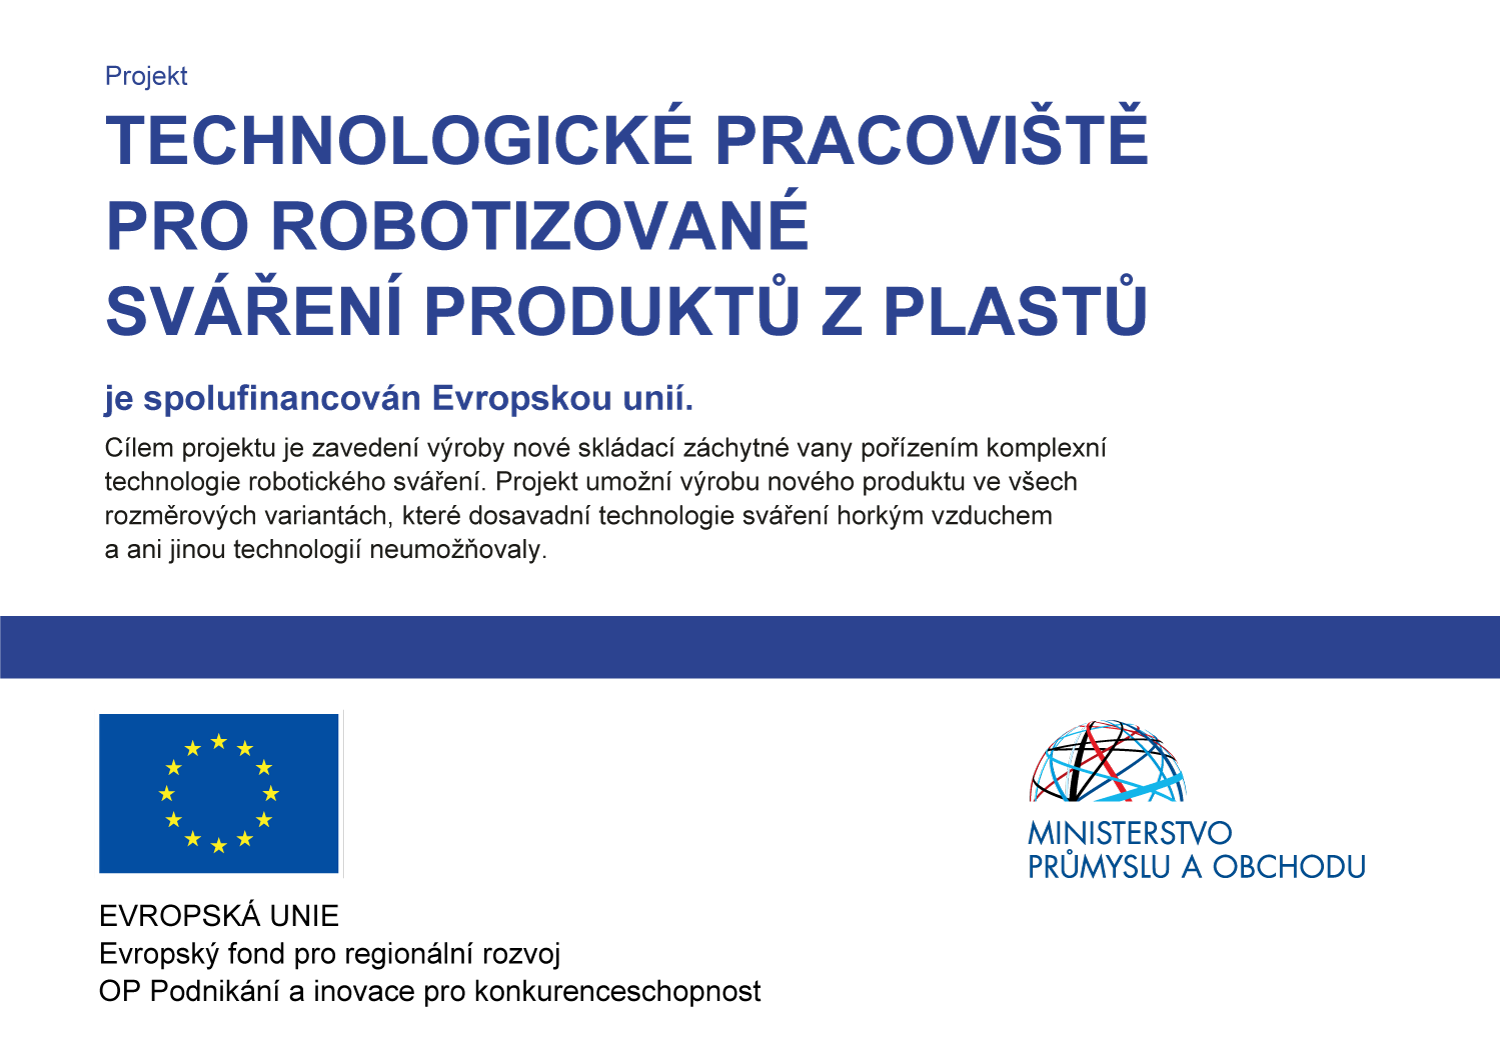 Projekt Technologické pracoviště pro robotizované sváření produktů z plastů je spolufinancován Evropskou unií